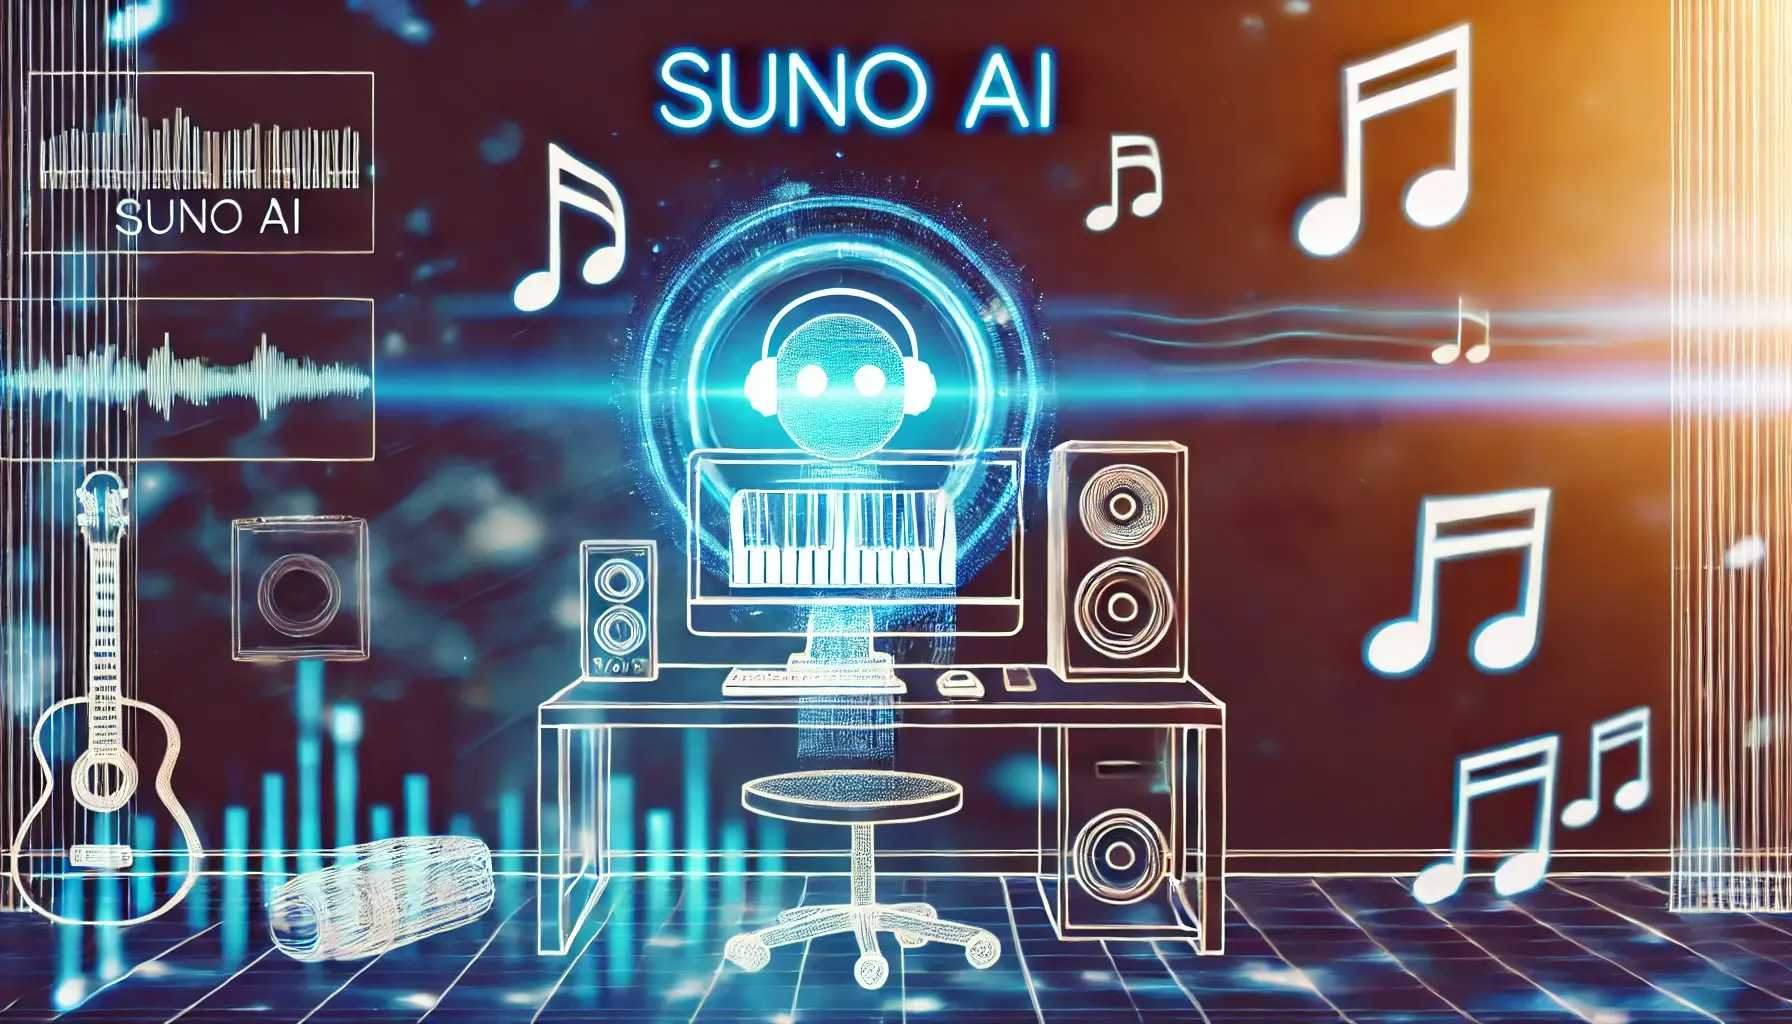 Descubra a Suno AI: A Revolucionária Inteligência Artificial Criadora de Música Automática!

Introdução
Imagine uma inteligência artificial capaz de criar músicas originais, melodias cativantes e harmonias únicas com apenas alguns cliques. Bem-vindo ao mundo da Suno AI, uma tecnologia inovadora que está mudando a forma como a música é produzida. Neste artigo, vamos explorar o poder da Suno AI, suas capacidades de criatividade musical automatizada e como essa ferramenta de IA está moldando o futuro da indústria musical.